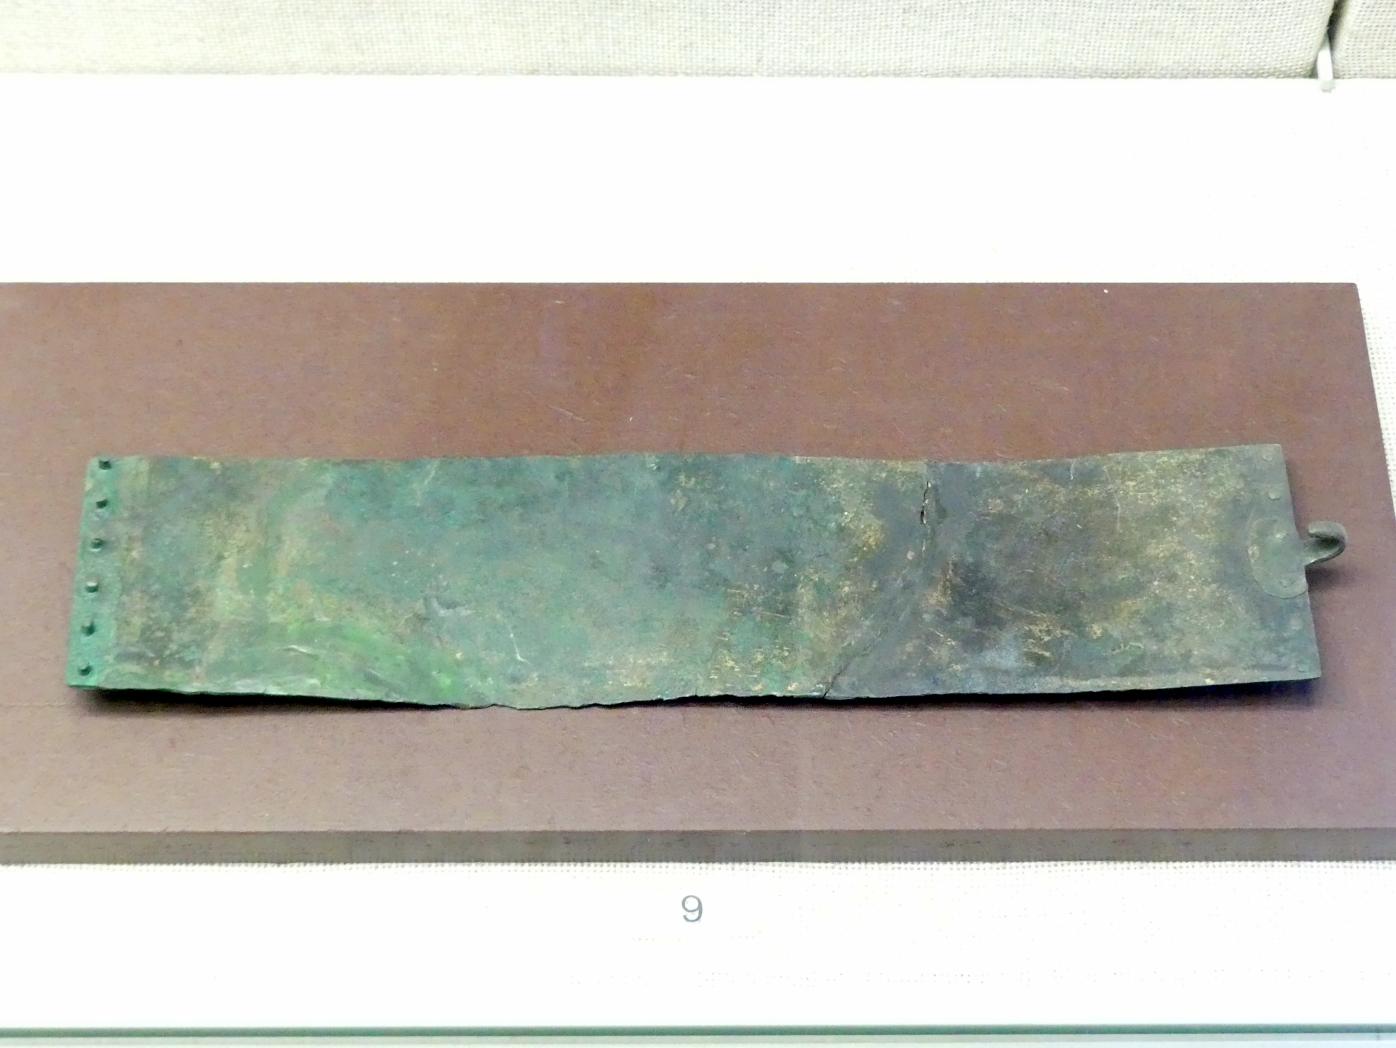 Gürtelblech, Hallstattzeit, 700 - 200 v. Chr., Bild 1/2